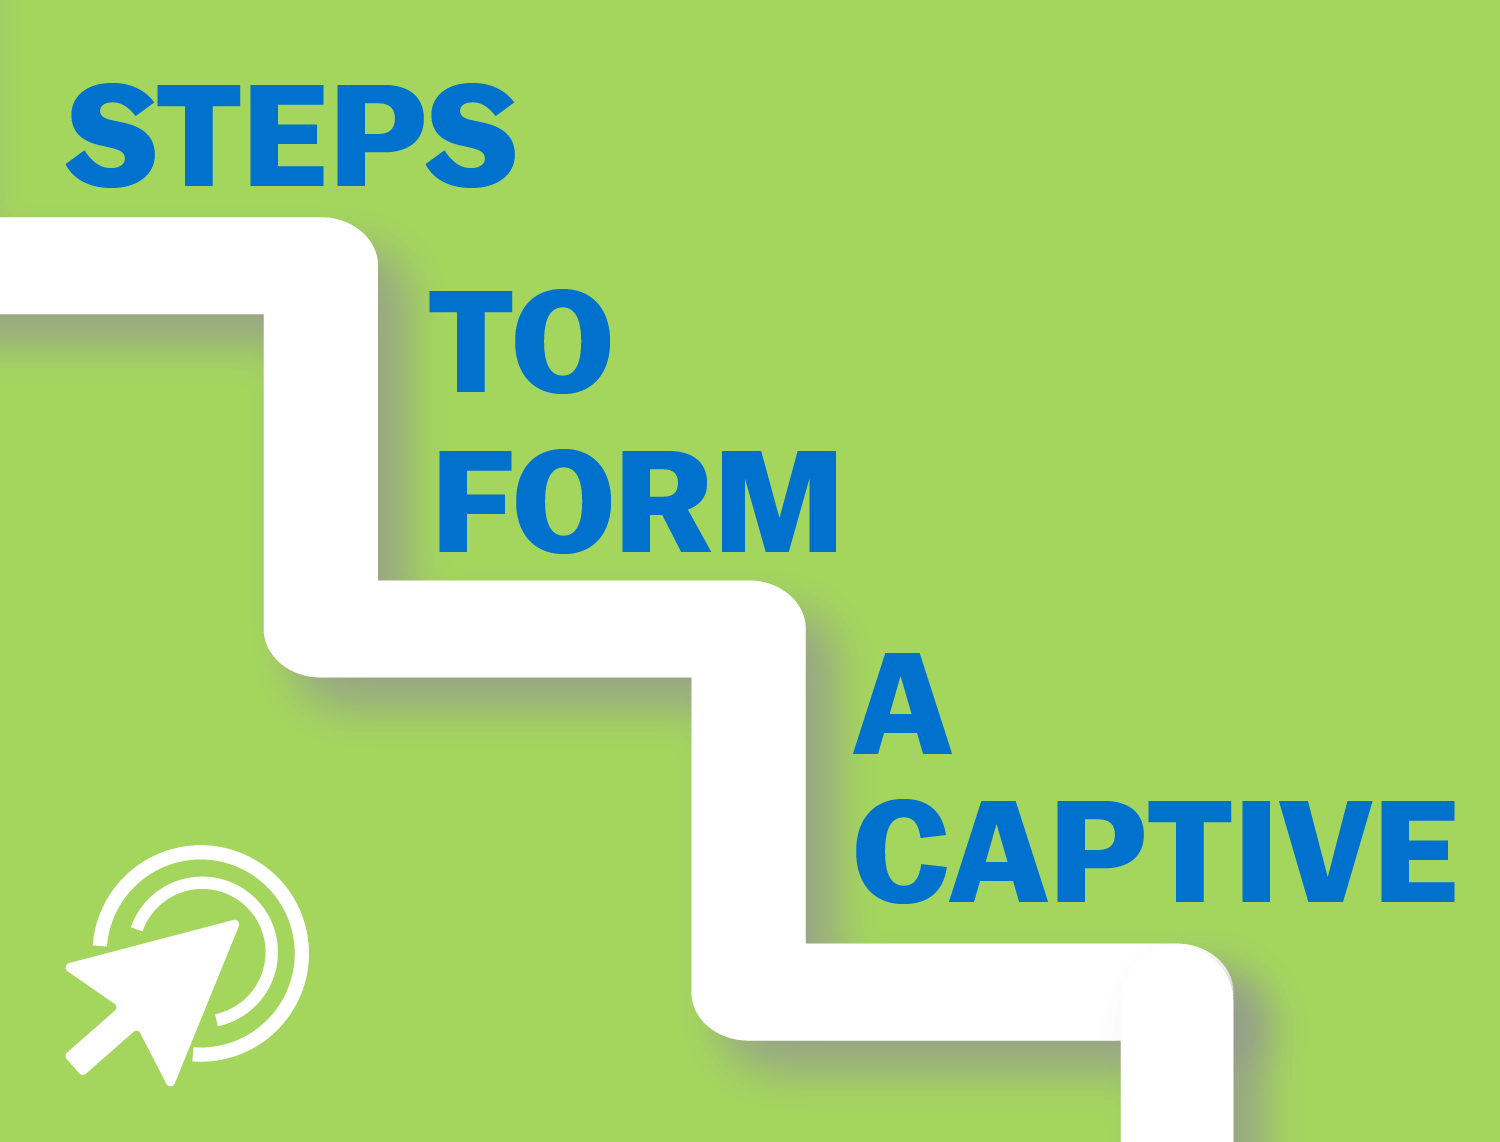 Steps to Form a captive